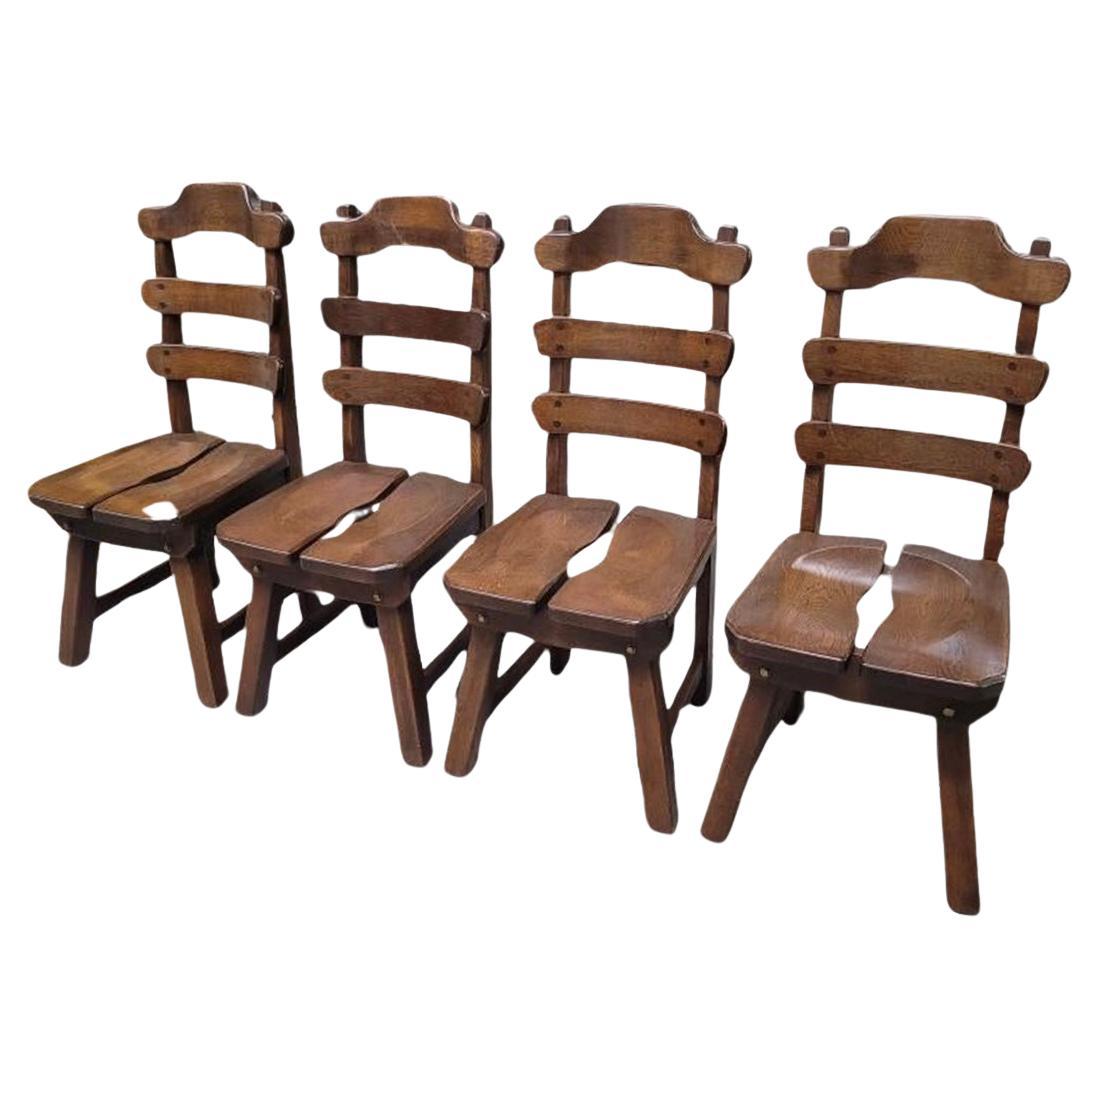 Brutalistische primitive dänische Eichenholz-Esszimmerstühle, skandinavische Stühle